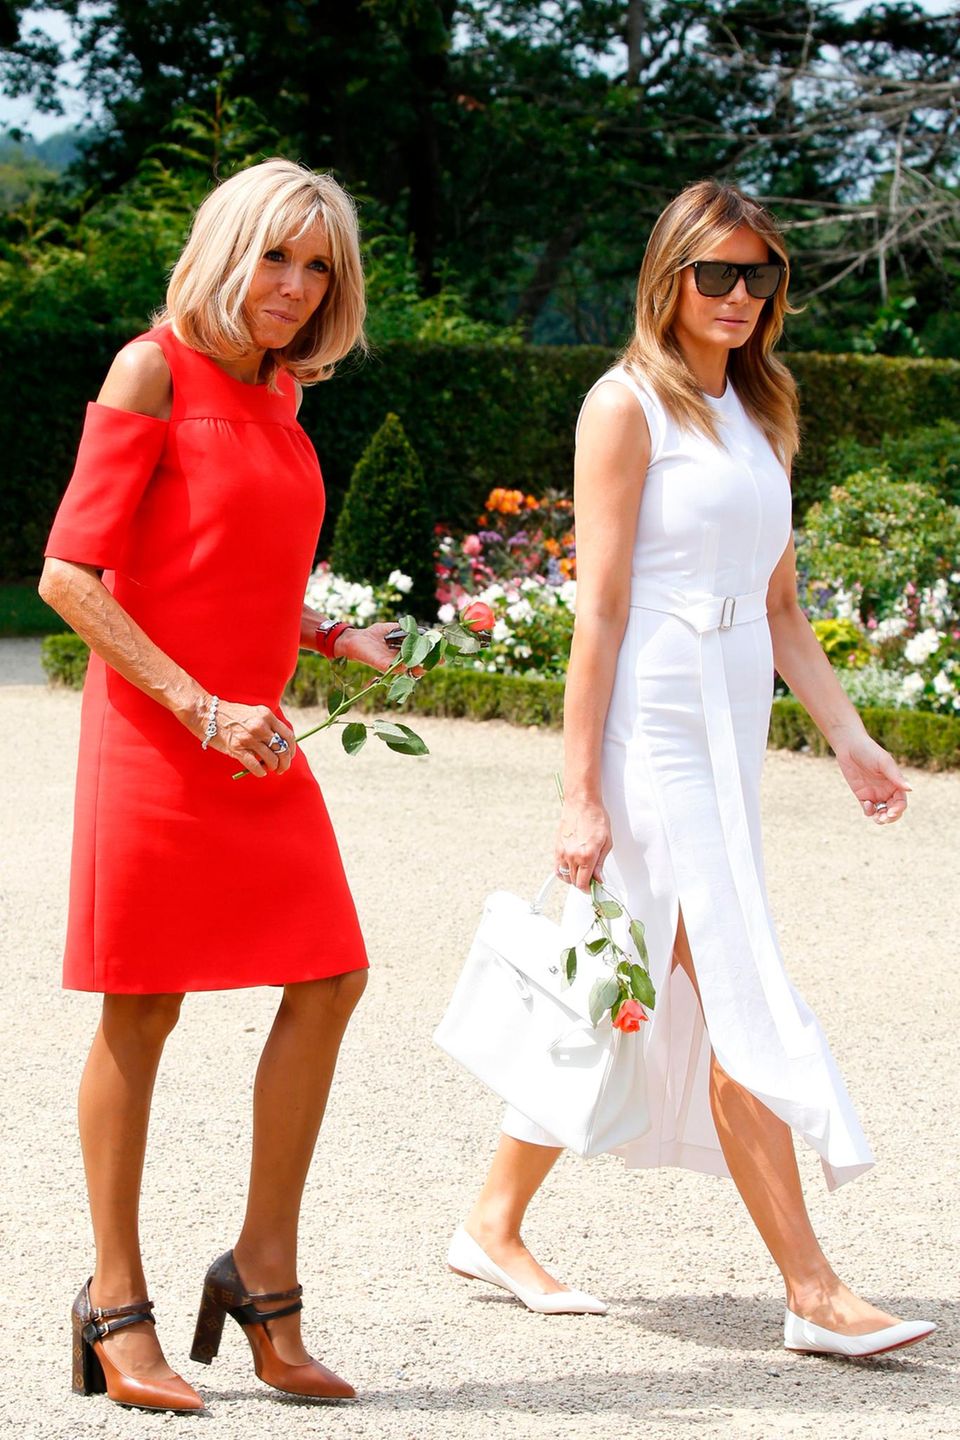 Auch ihr nächstes Accessoire - eine rote Rose - ist farblich wie gemacht für den Look der First Lady Frankreichs. An den Füßen trägt die hübsche Blondine ein Design ihres Lieblings-Designerlabels Louis Vuitton. 